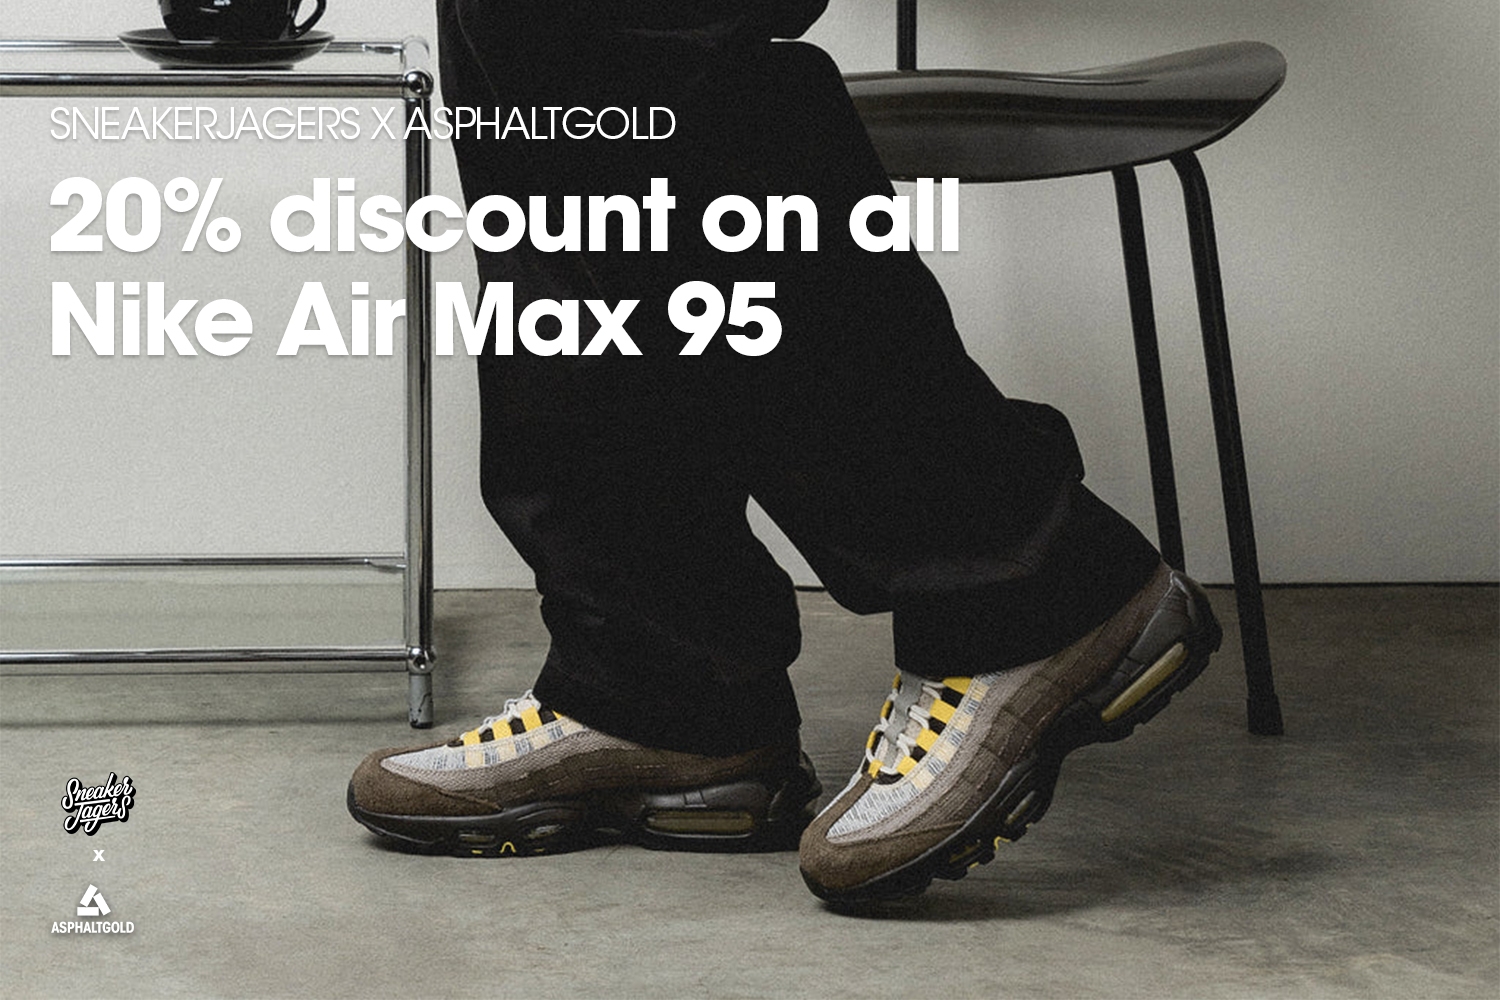 Sneakerjagers komt met korting op alle Air Max 95 modellen bij Asphaltgold